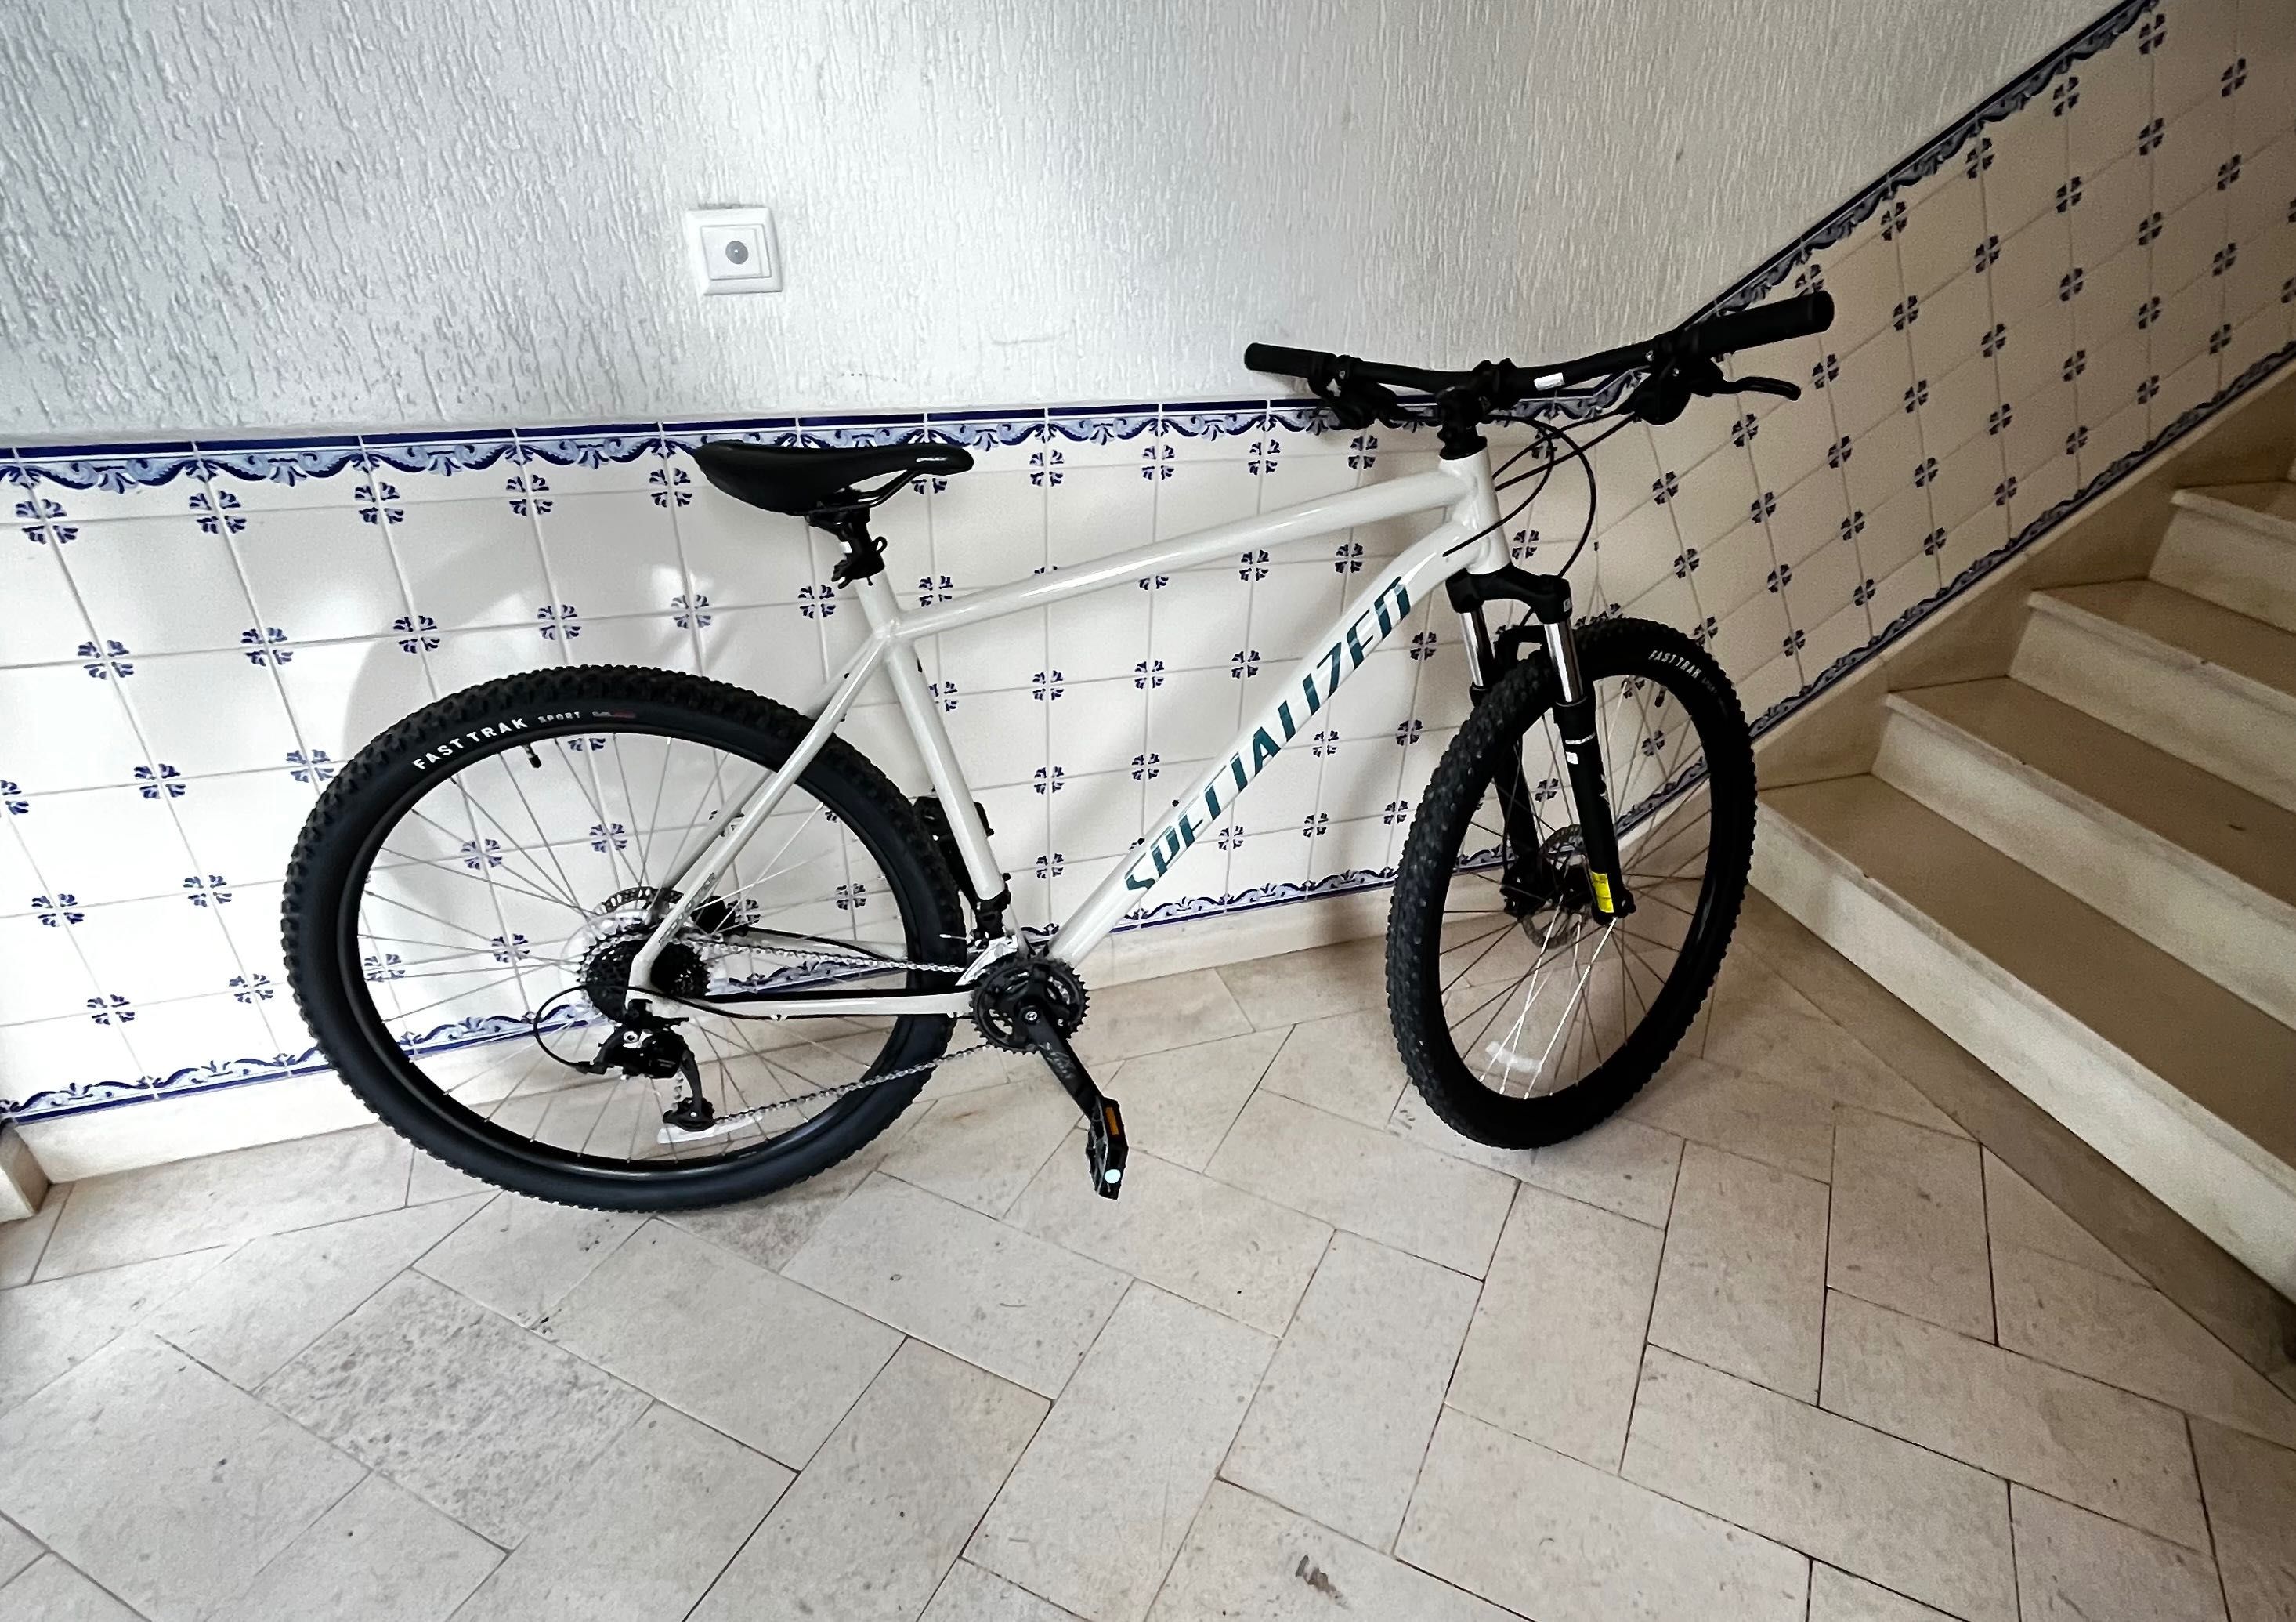 Bicicleta specialized